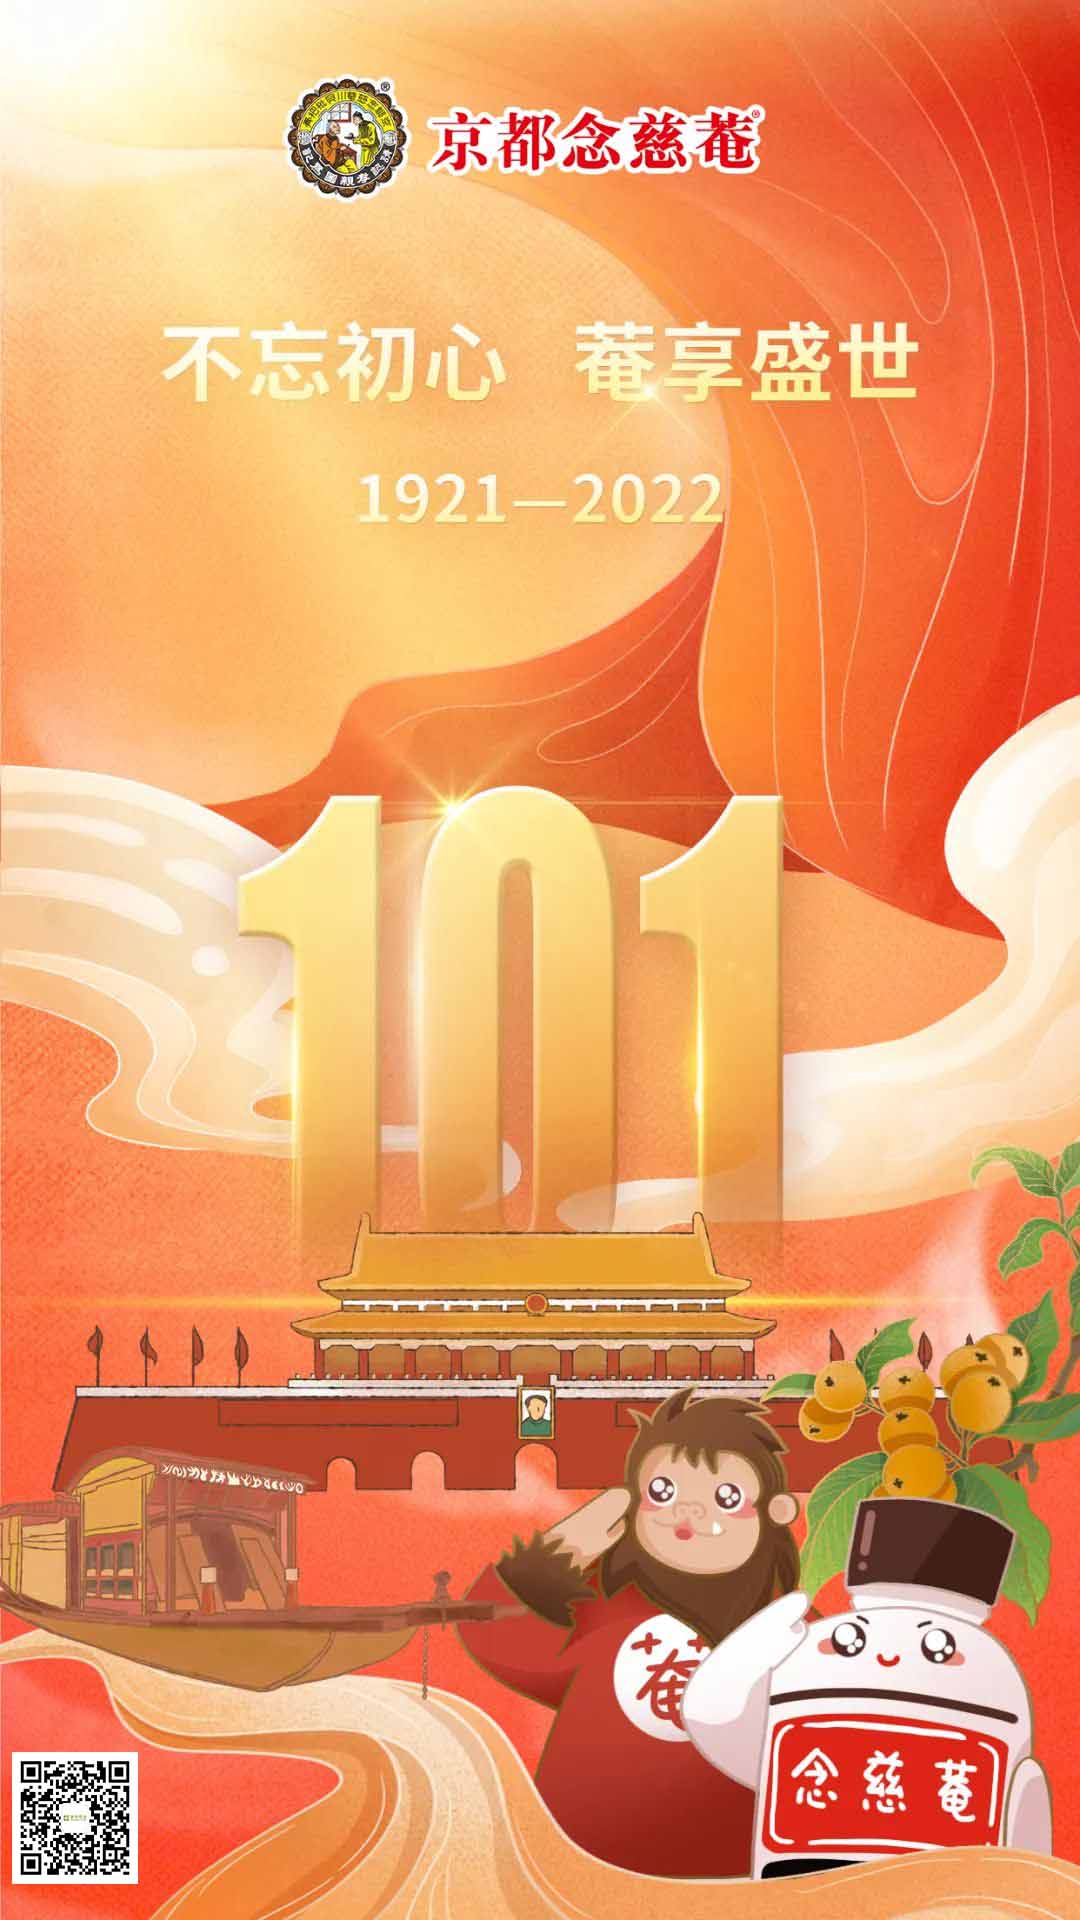 康侨药业和京都念慈菴庆祝建党101周年